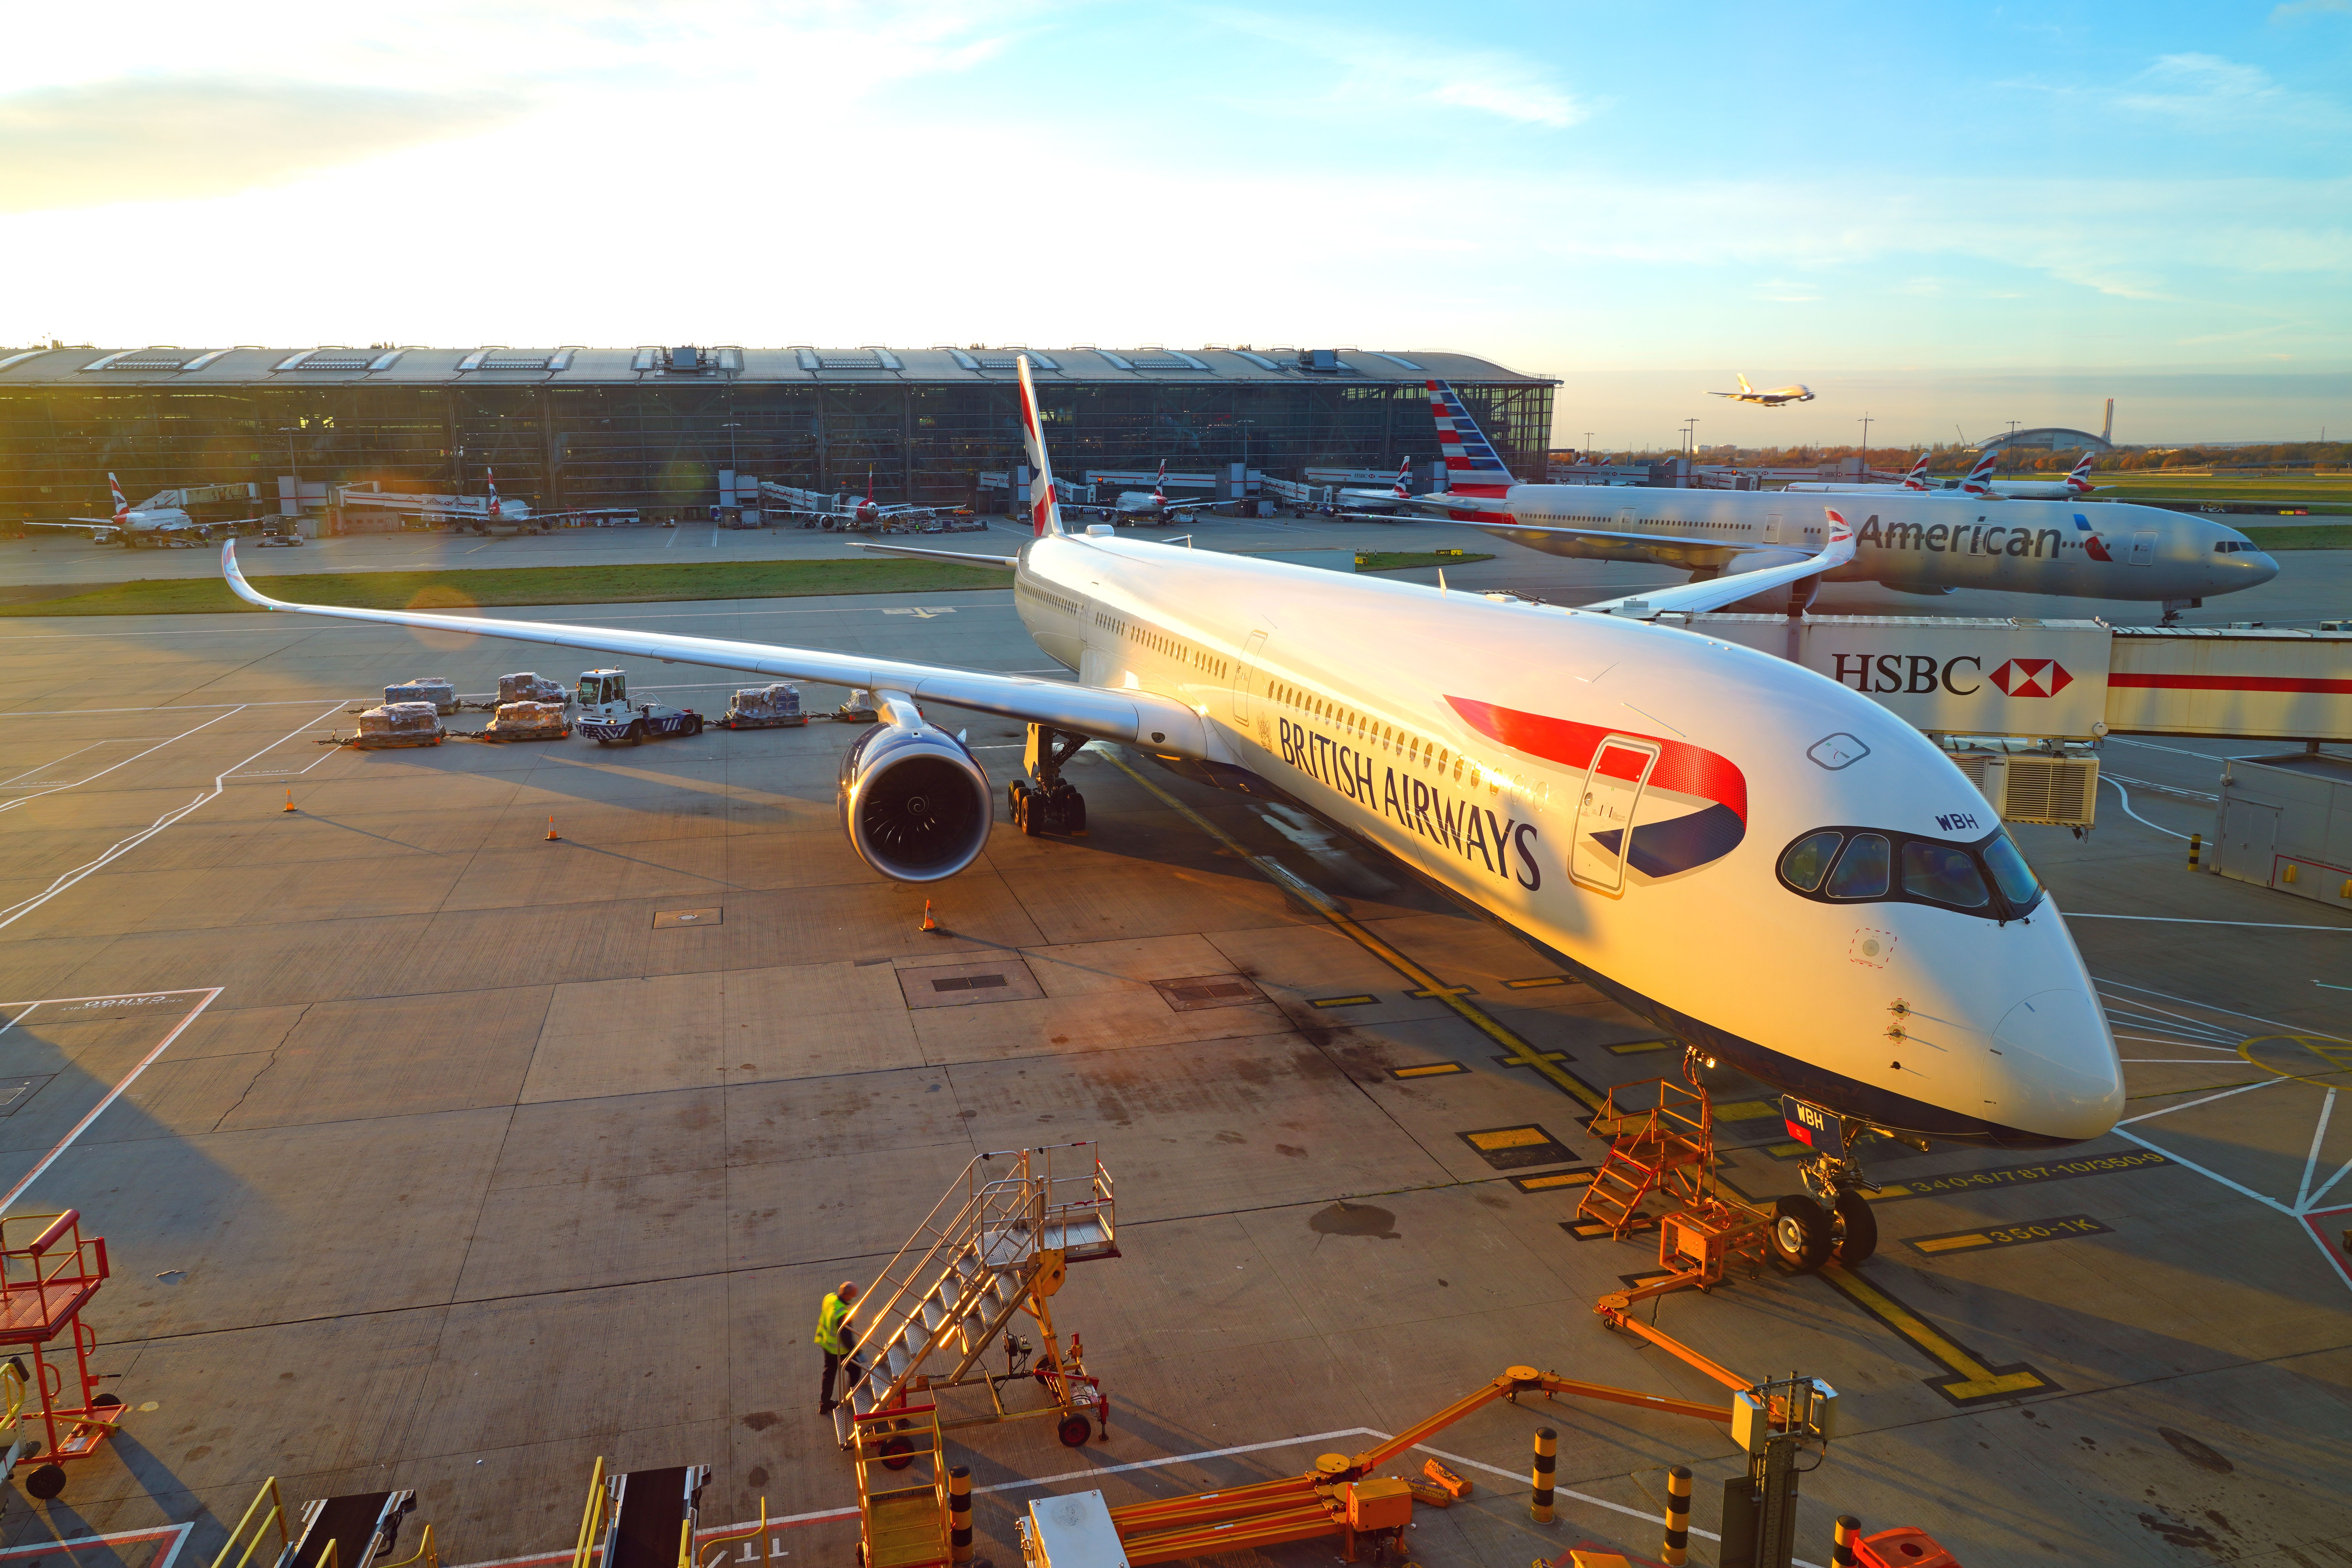 British Airways Airbus A350 at London Heathrow Airport LHR shutterstock_2091987517